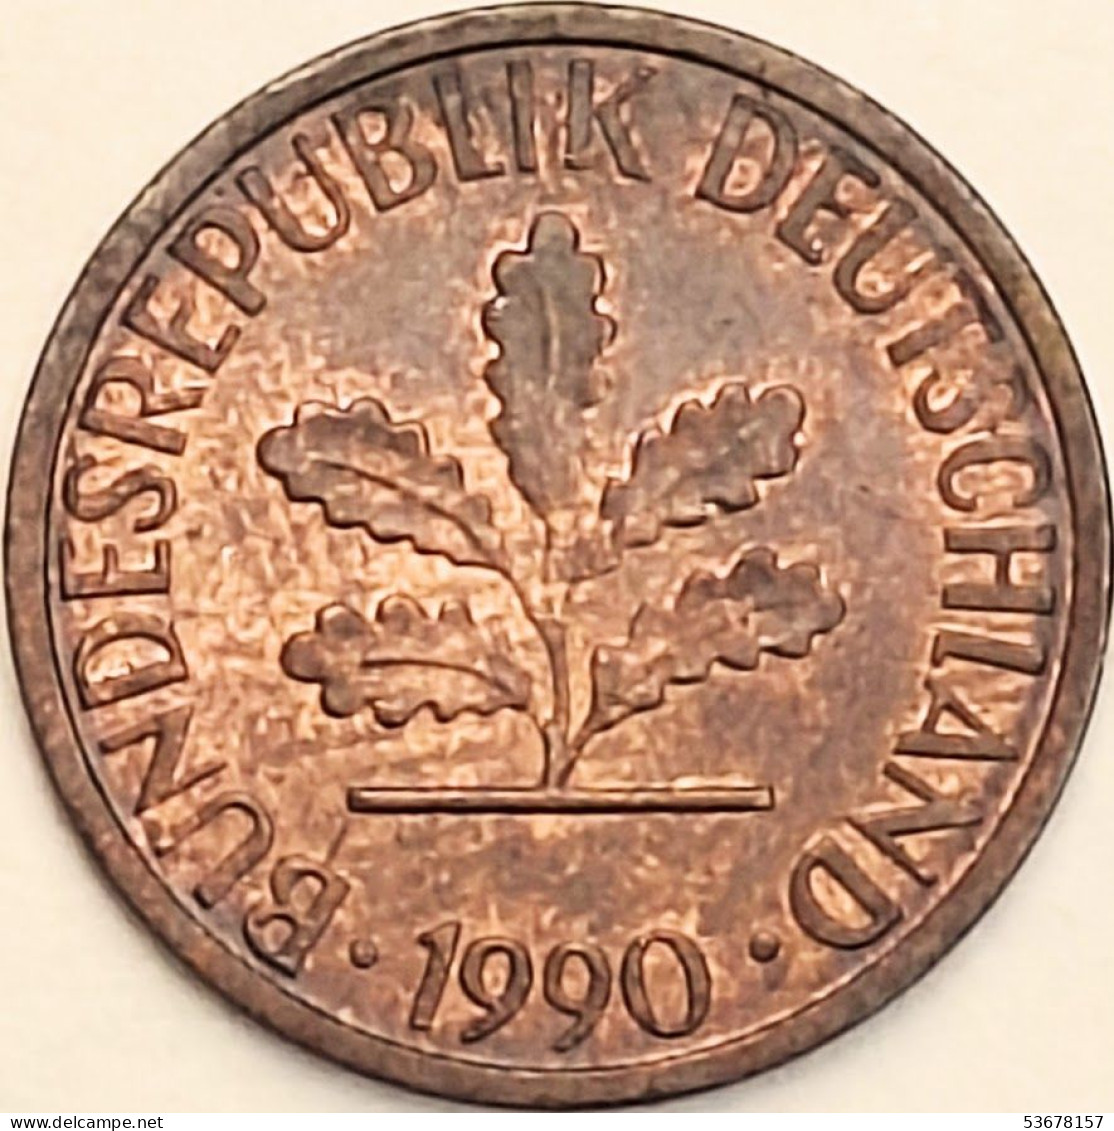 Germany Federal Republic - Pfennig 1990 D, KM# 105 (#4505) - 1 Pfennig